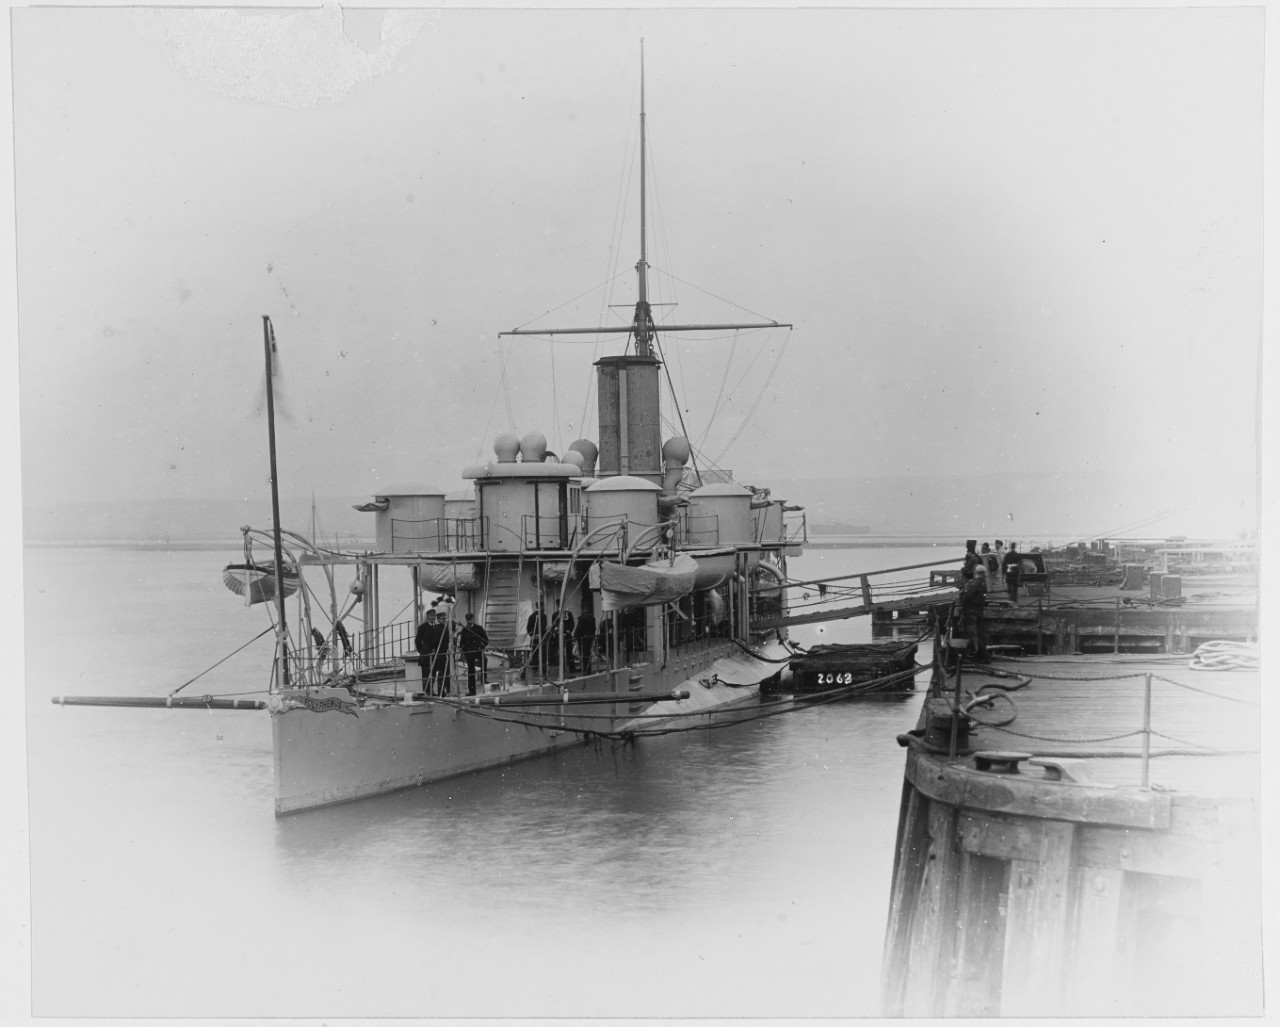 HMS POLYPHEMUS (British ram, 1881)